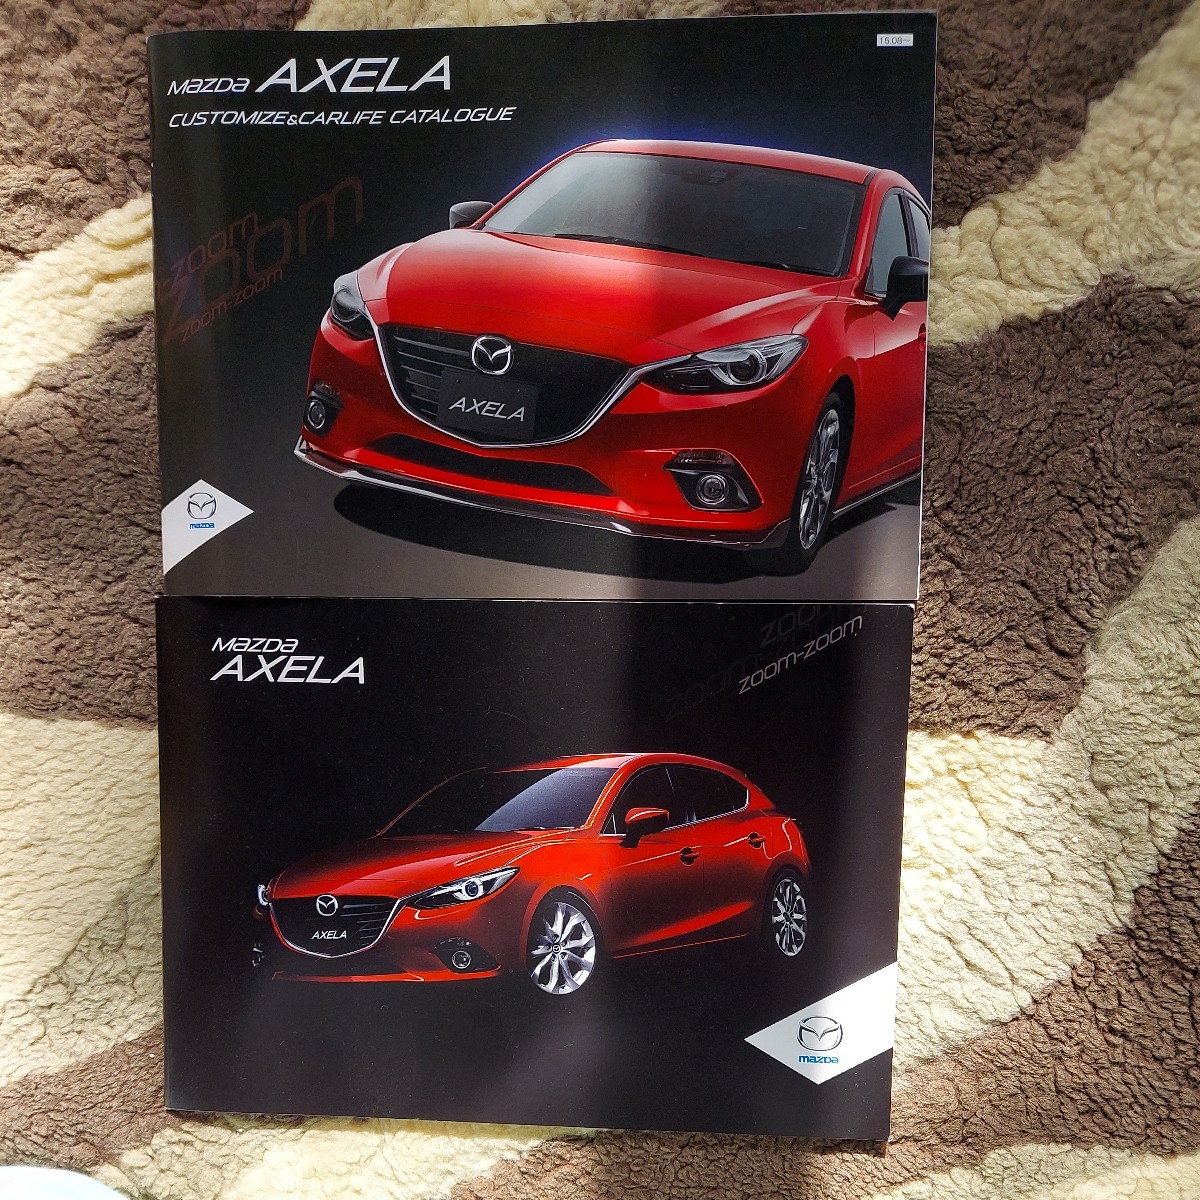  Mazda Axela 2015.7 catalog 